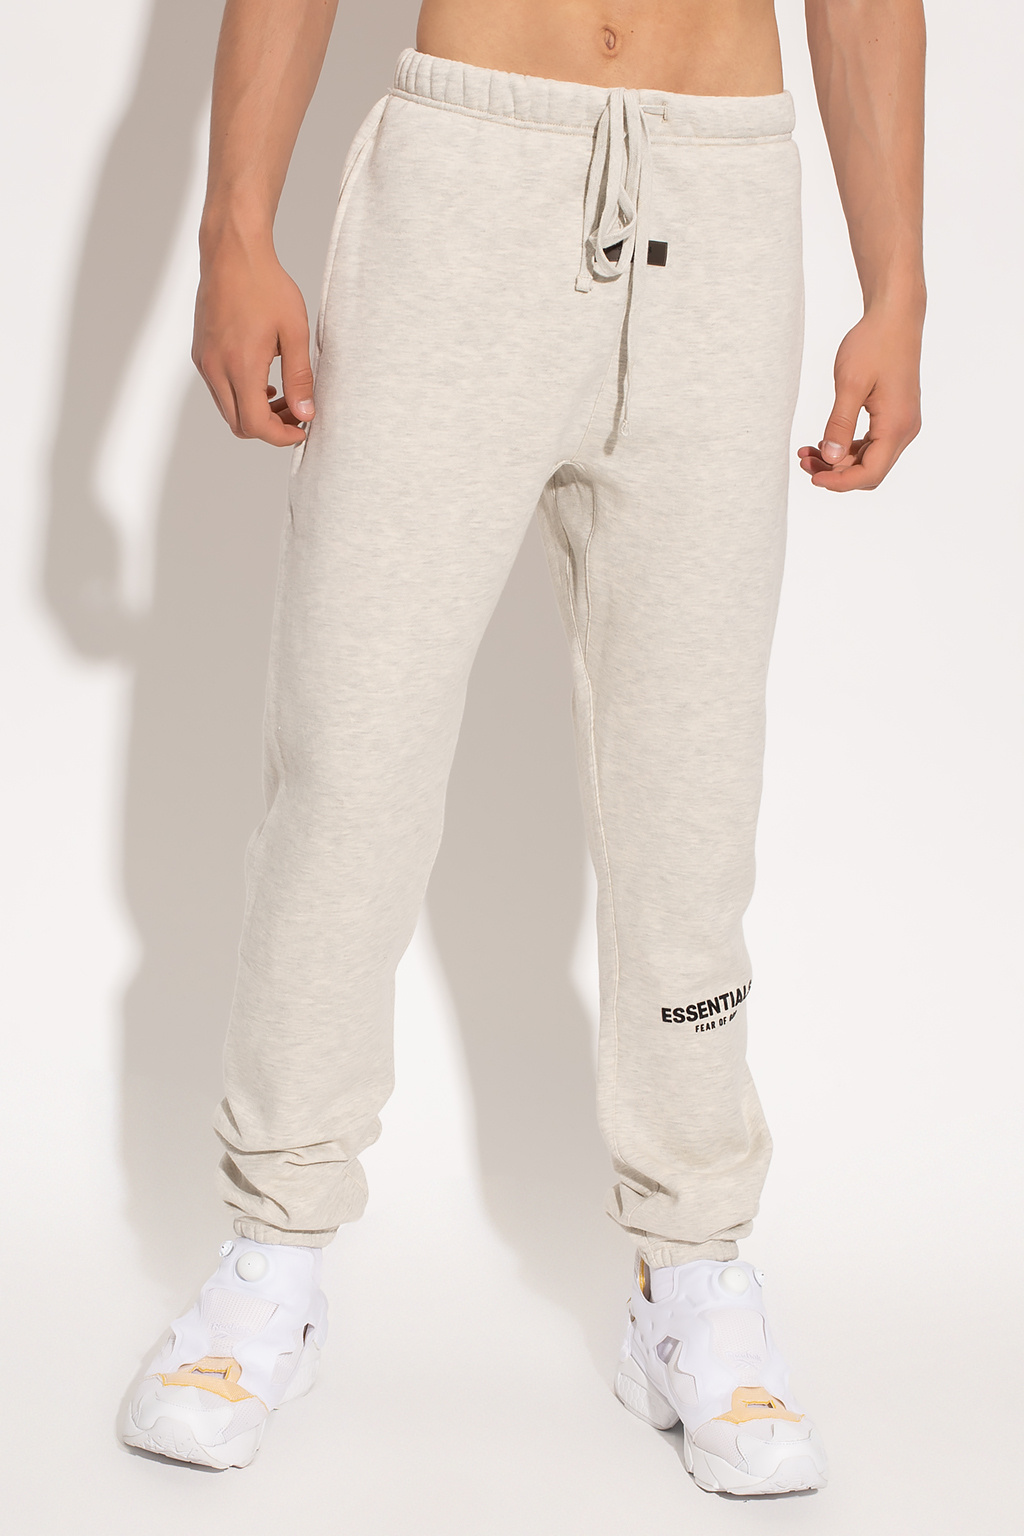 Grey Sweatpants with logo Fear Of God Essentials - Vitkac GB